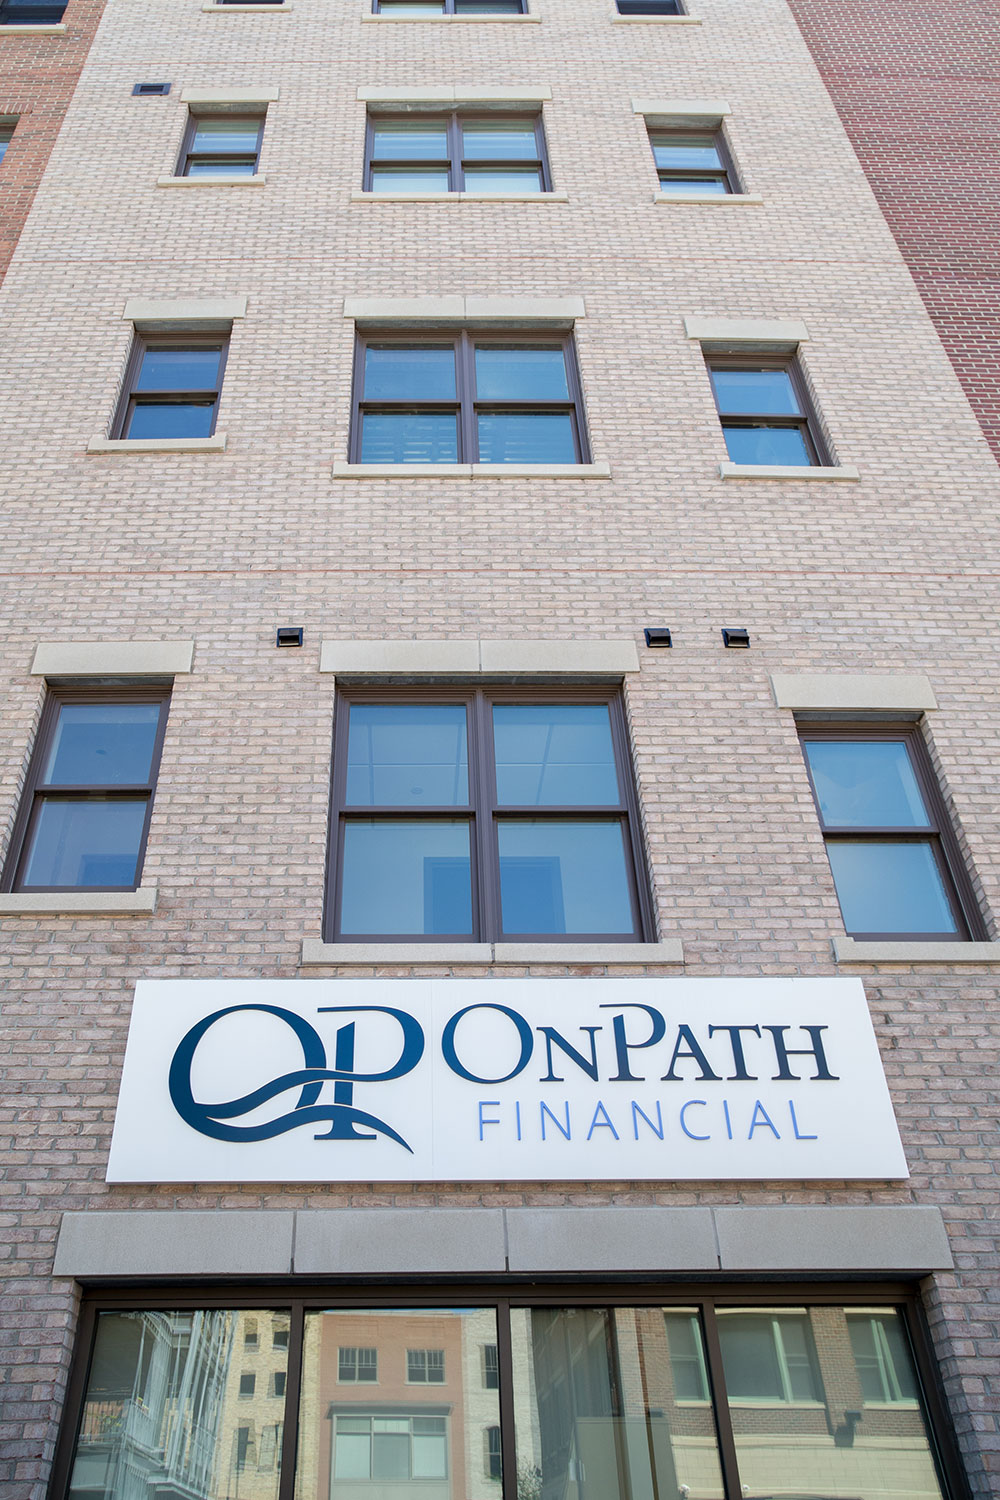 OnPath Financial